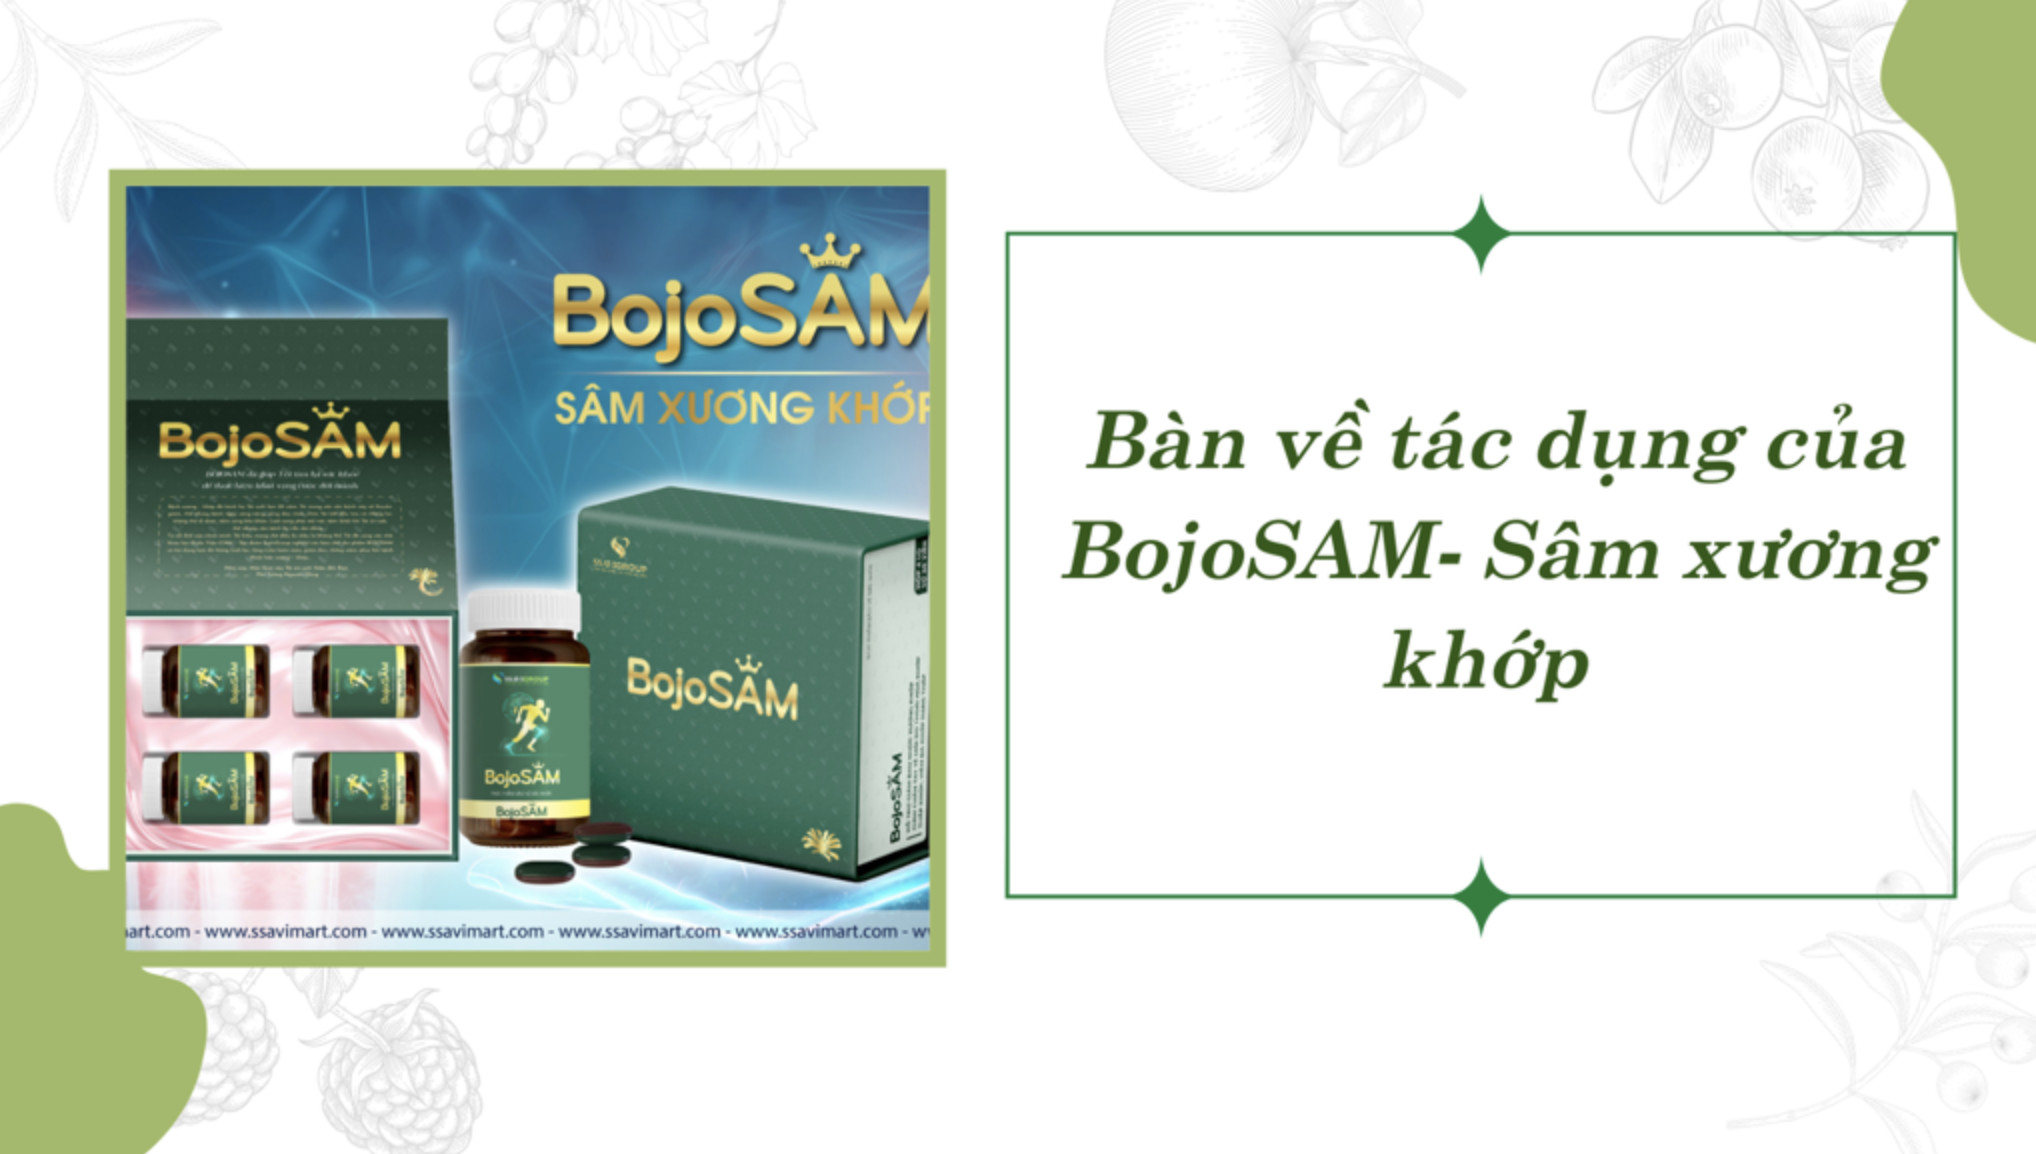 Bàn về tác dụng của sản phẩm Bojo SÂM - Sâm xương khớp